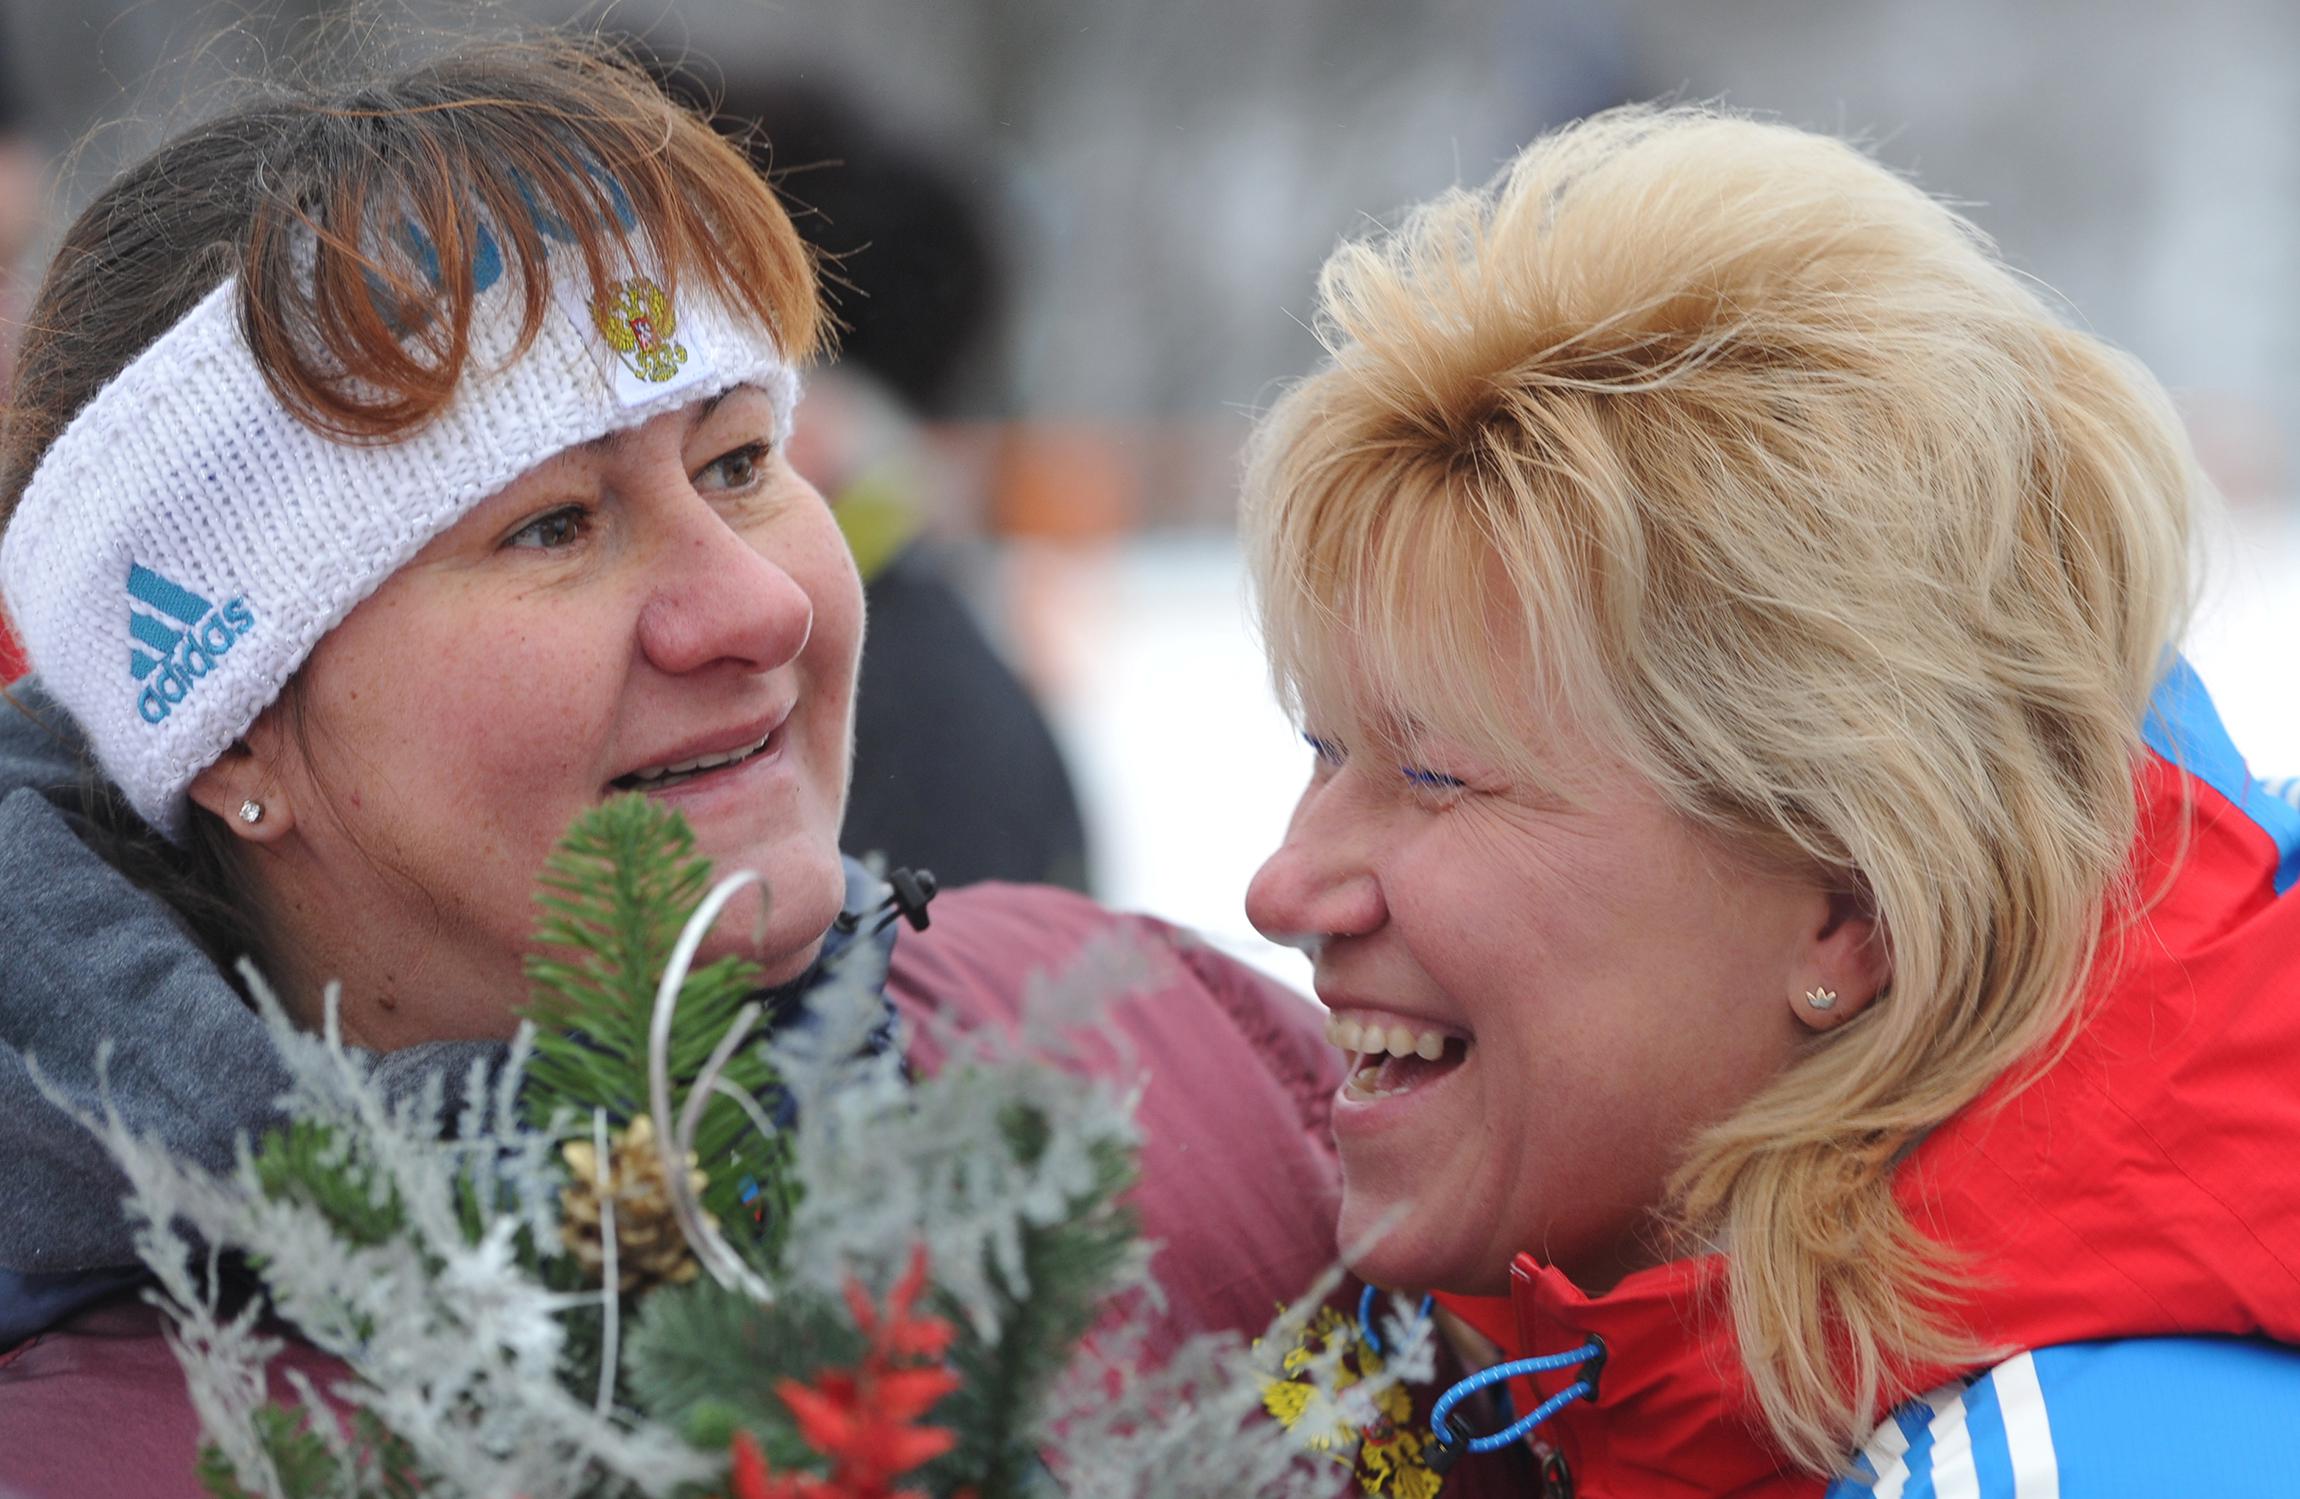 В 1996 году у Резцовой родилась вторая дочь Кристина. Позже спортсменка вернулась в лыжные гонки, где показала неплохие результаты: в 1999 году она заняла девятое место в общем зачете Кубка мира и выиграла золото чемпионата мира в женской эстафете. В 2002 году она в возрасте 38 лет окончательно завершила свою выдающуюся карьеру.

Кристина Резцова пошла по стопам матери и старшей сестры. Она серебряный и бронзовый призер Олимпийских игр в Пекине (2022), чемпионка России по биатлону и летнему биатлону.

На фото: Красногорский марафон. 22 декабря. Анфиса Резцова (справа) с президентом Федерации лыжных гонок России Еленой Вяльбе.